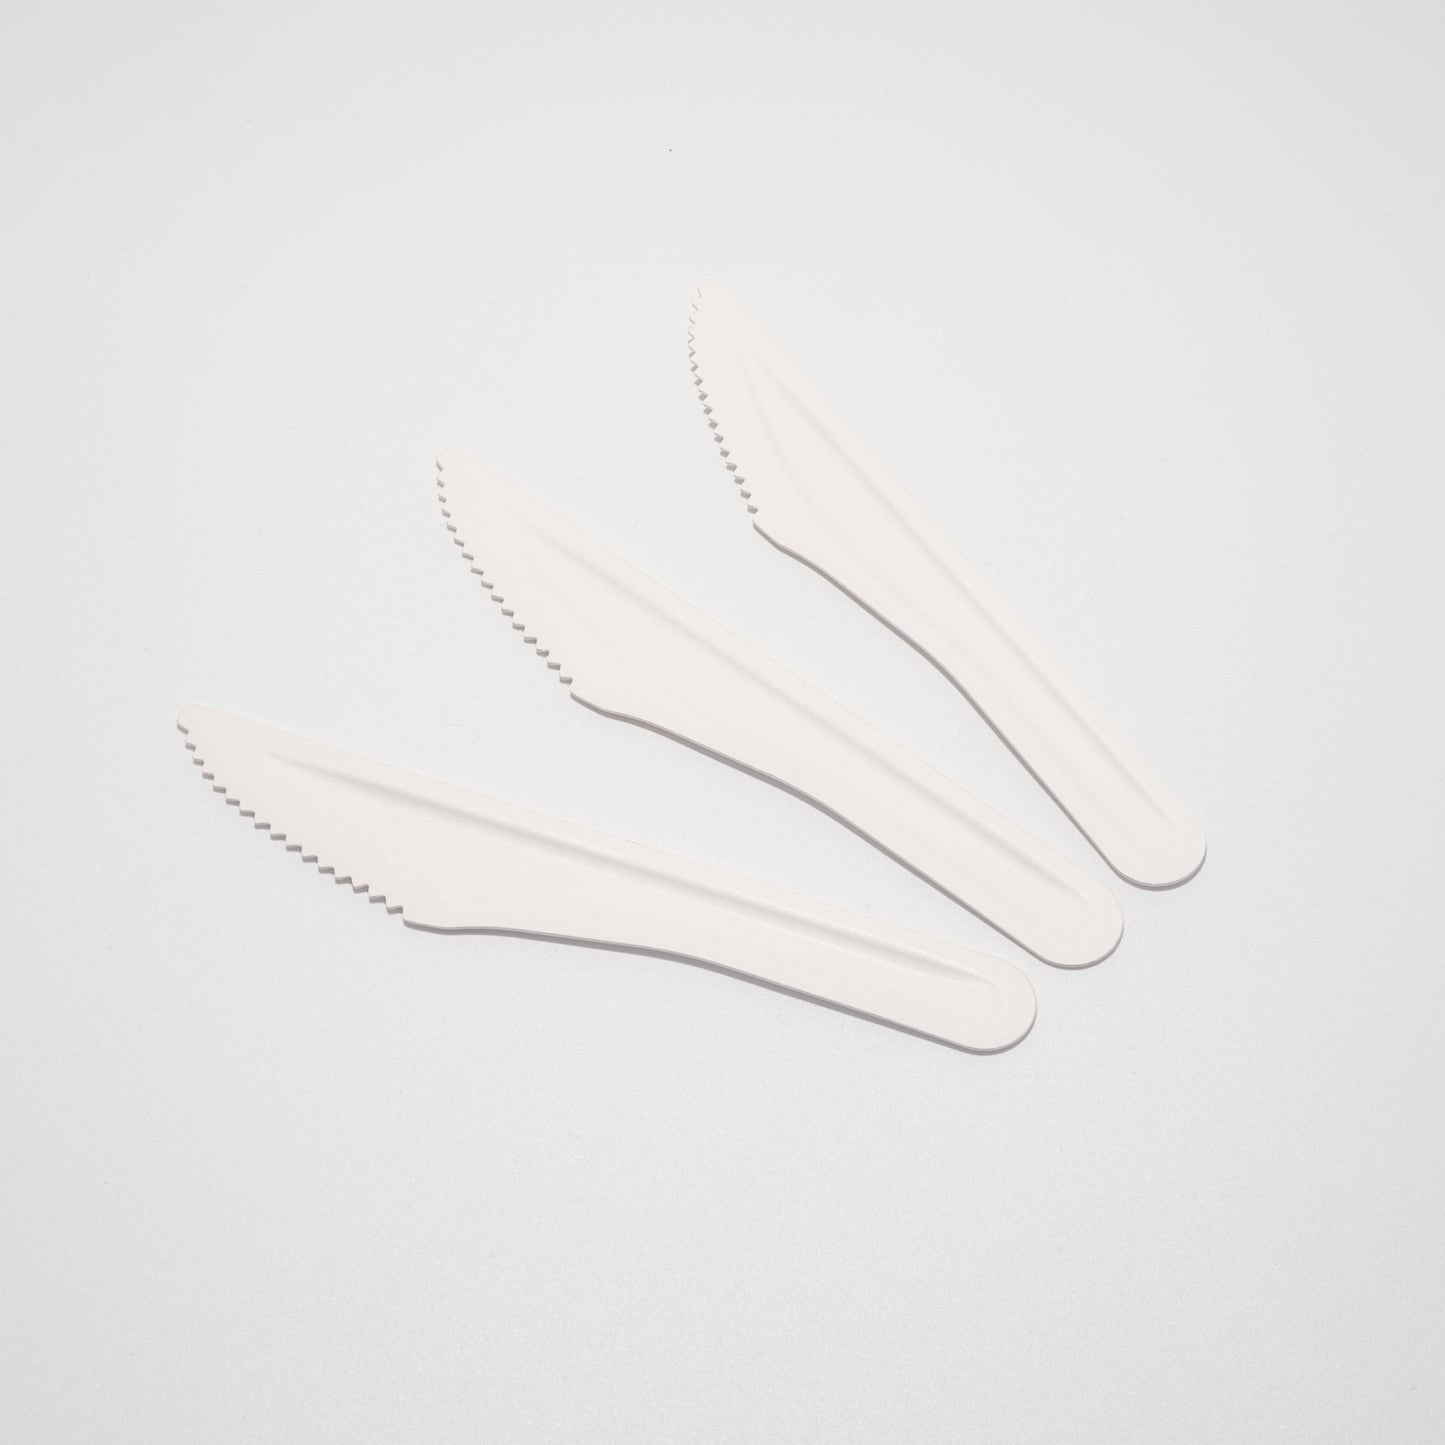 Drei unbeschichtete Messer aus Papier nebeneinander liegend